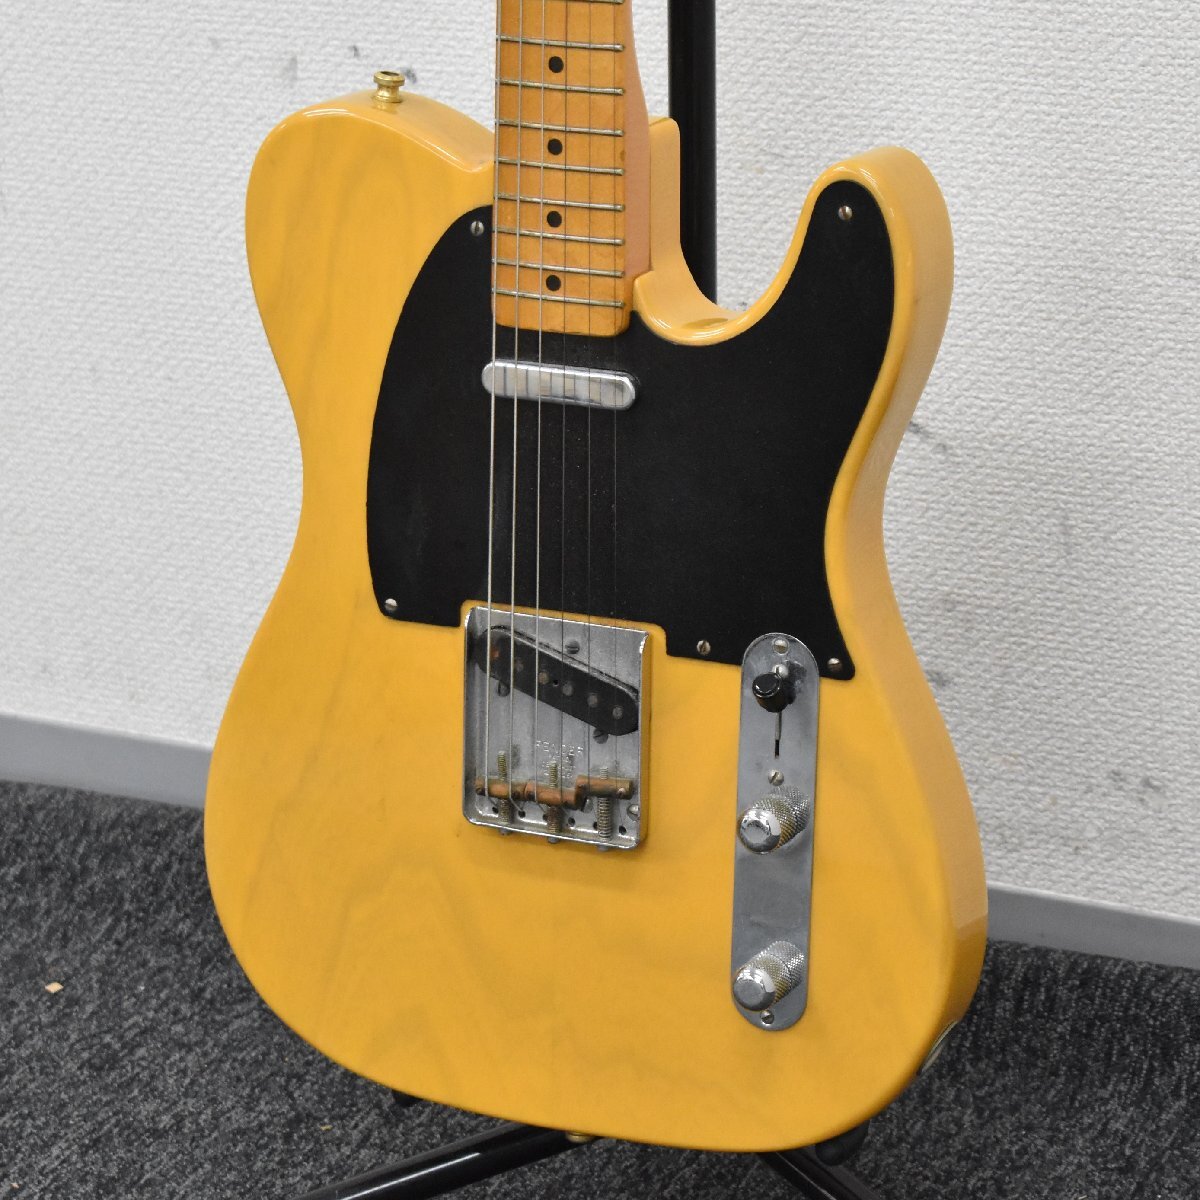 Σ2702 中古品 Fender American Vintage 52 TL/DUNCAN #2573254 フェンダー エレキギターの画像1